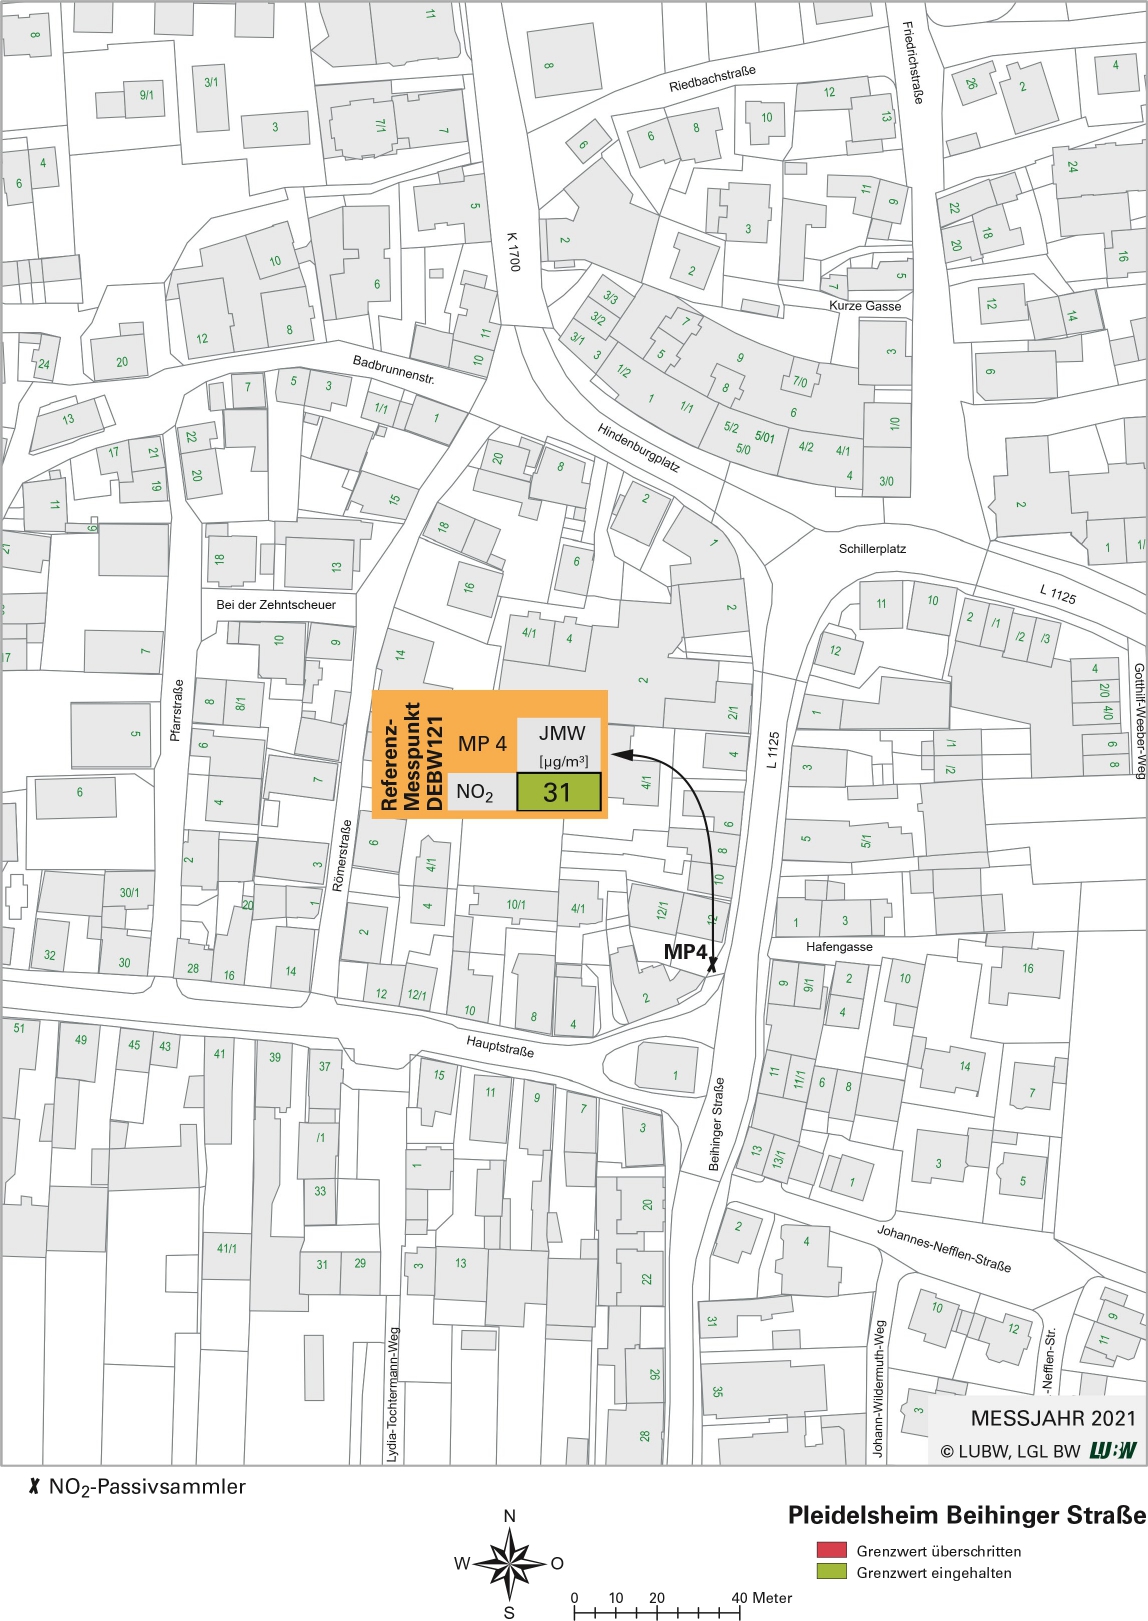 Kartenausschnitt, der die Lage der Messstelle Pleidelsheim Beihinger Straße (Referenzmesspunkt) zeigt. Dargestellt ist zudem das Ergebnis (Jahresmittelwert 2021) der gemessenen Stickstoffdioxidbelastung.